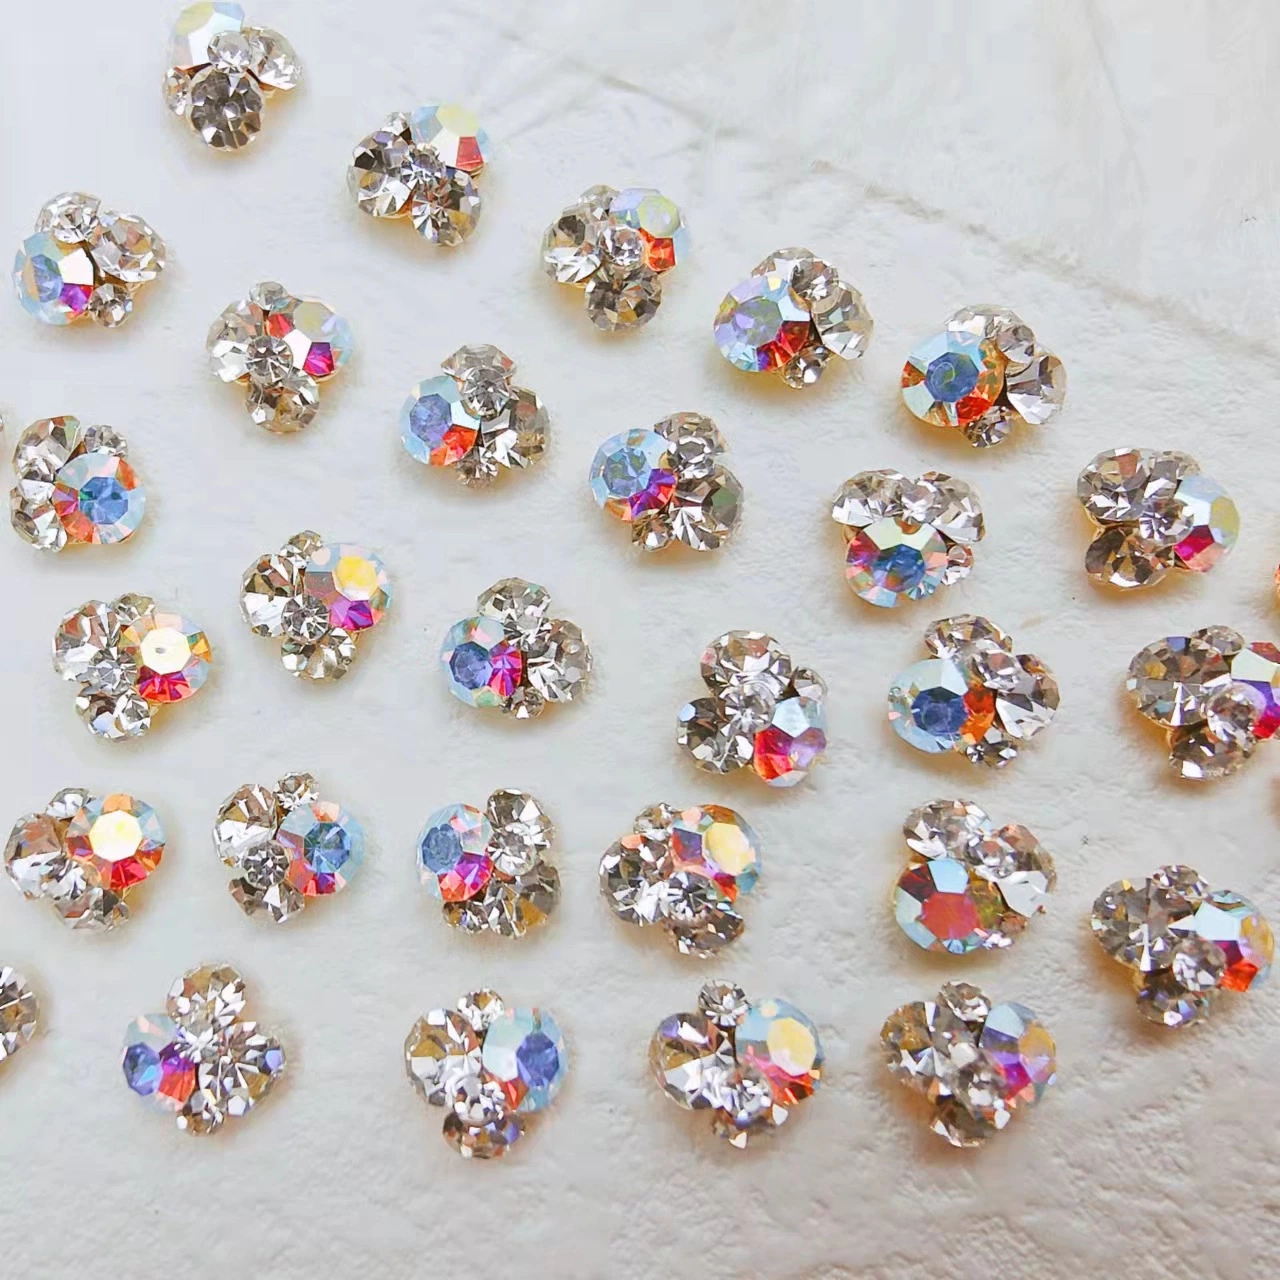 Nail Art de aleación de mayorista de accesorios de diamantes de pila de producto terminado el tamaño de Rhine-Nail Pegar Accesorios Nuevos japoneses decoración tridimensional